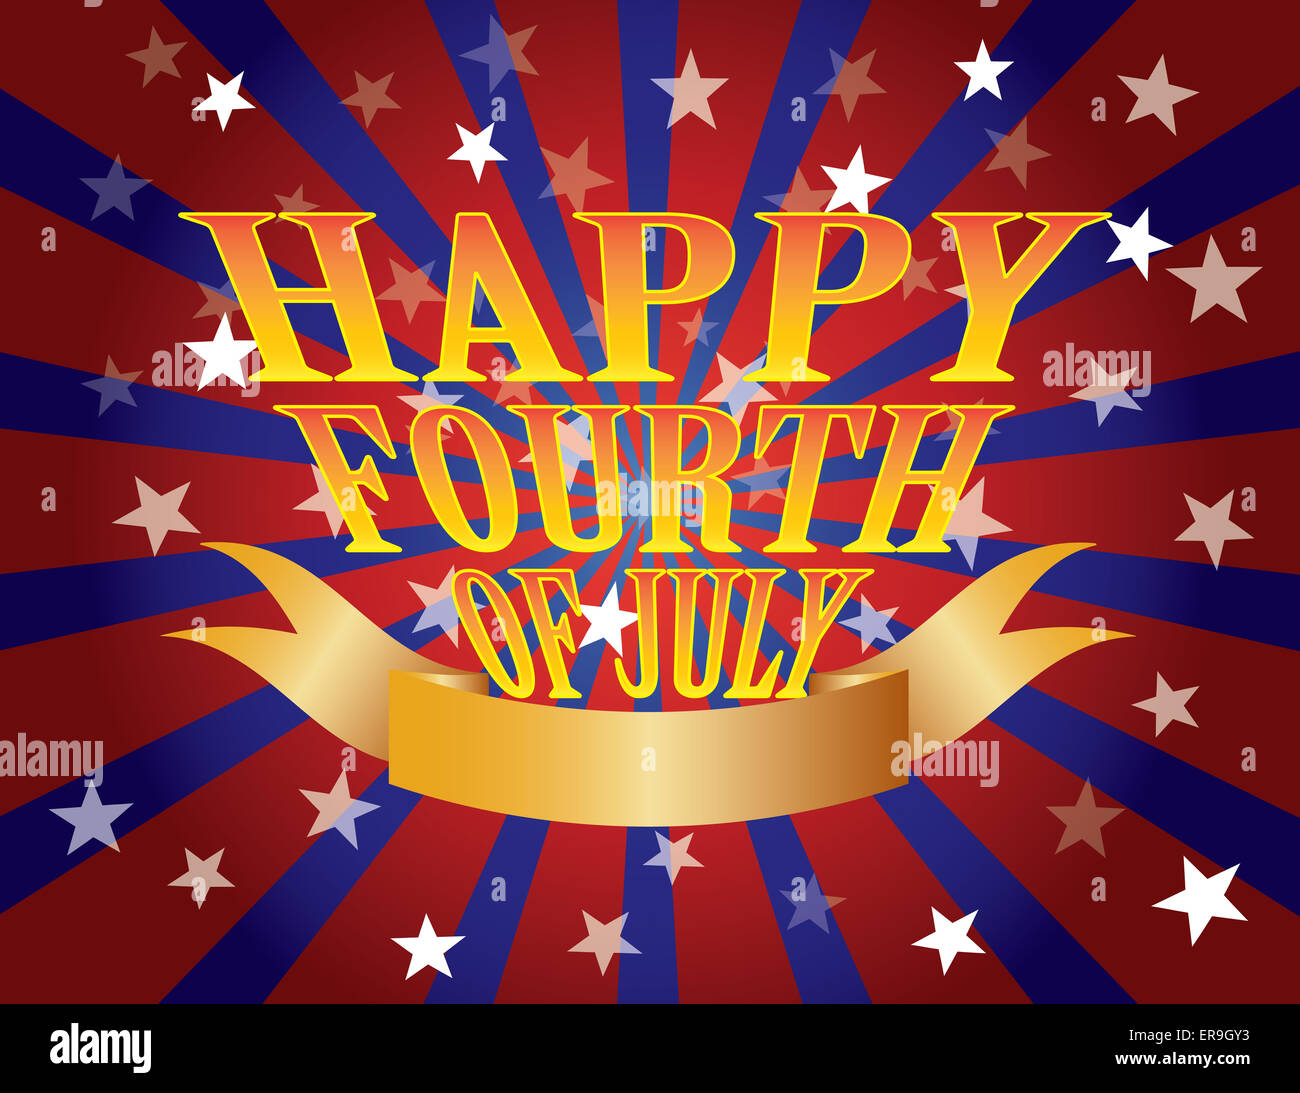 Fourth Of July Text für Independence Day roten weißen und blauen Sterne Streifen Sonnenstrahlen Banner Stockfoto